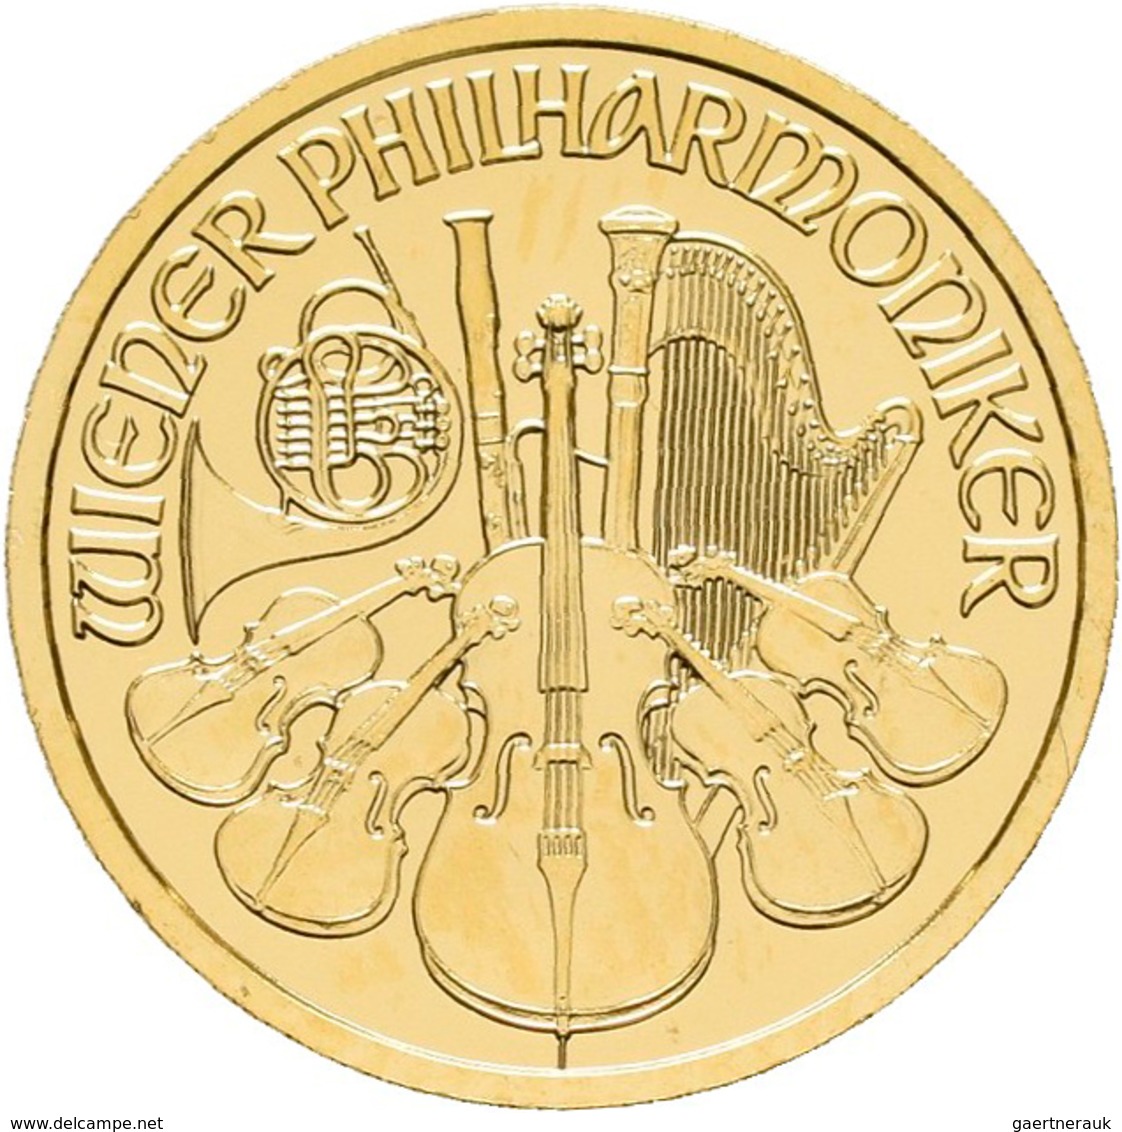 Österreich - Anlagegold: 10 Euro 2005, Wiener Philharmoniker, Gold 999,9, 1/10 Unze, Stempelglanz. - Oesterreich